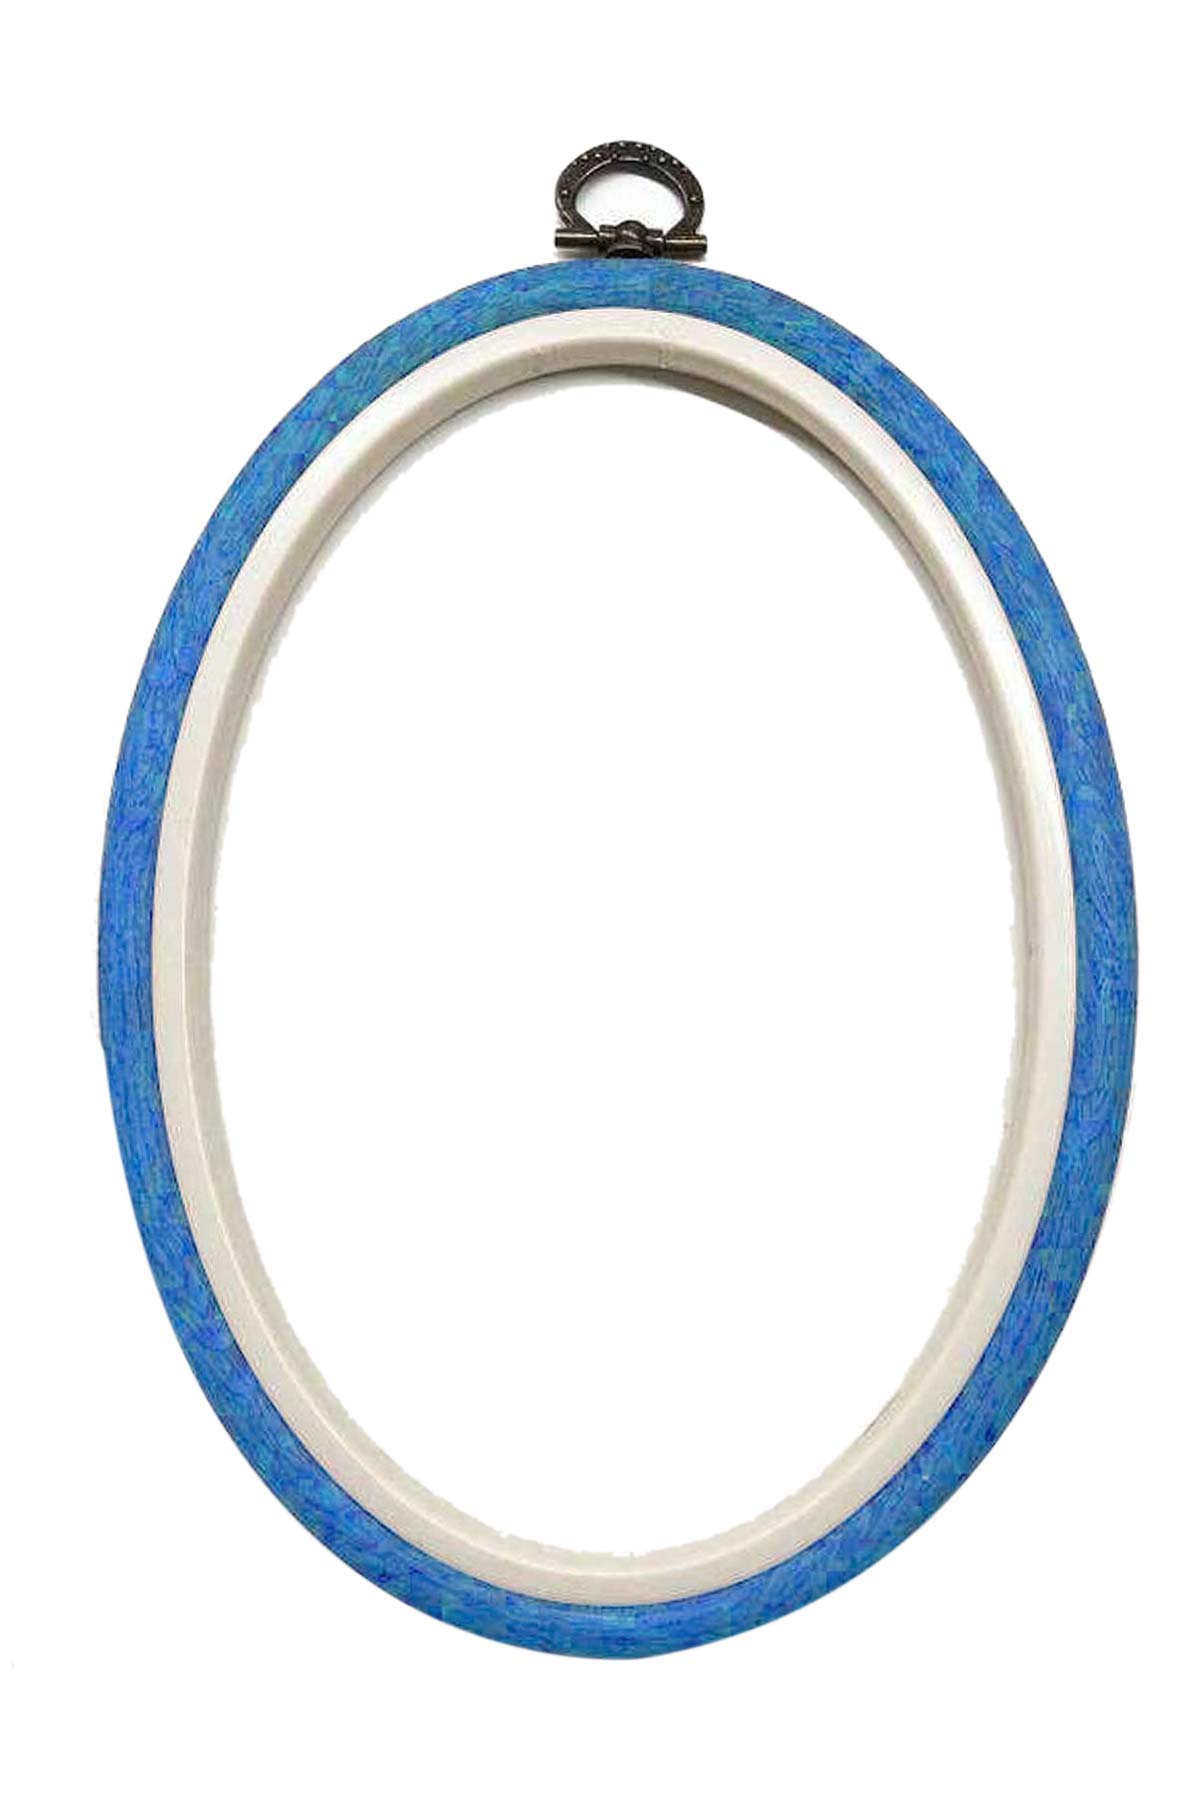 Nurge Plastic Oval Embroidery Hoop